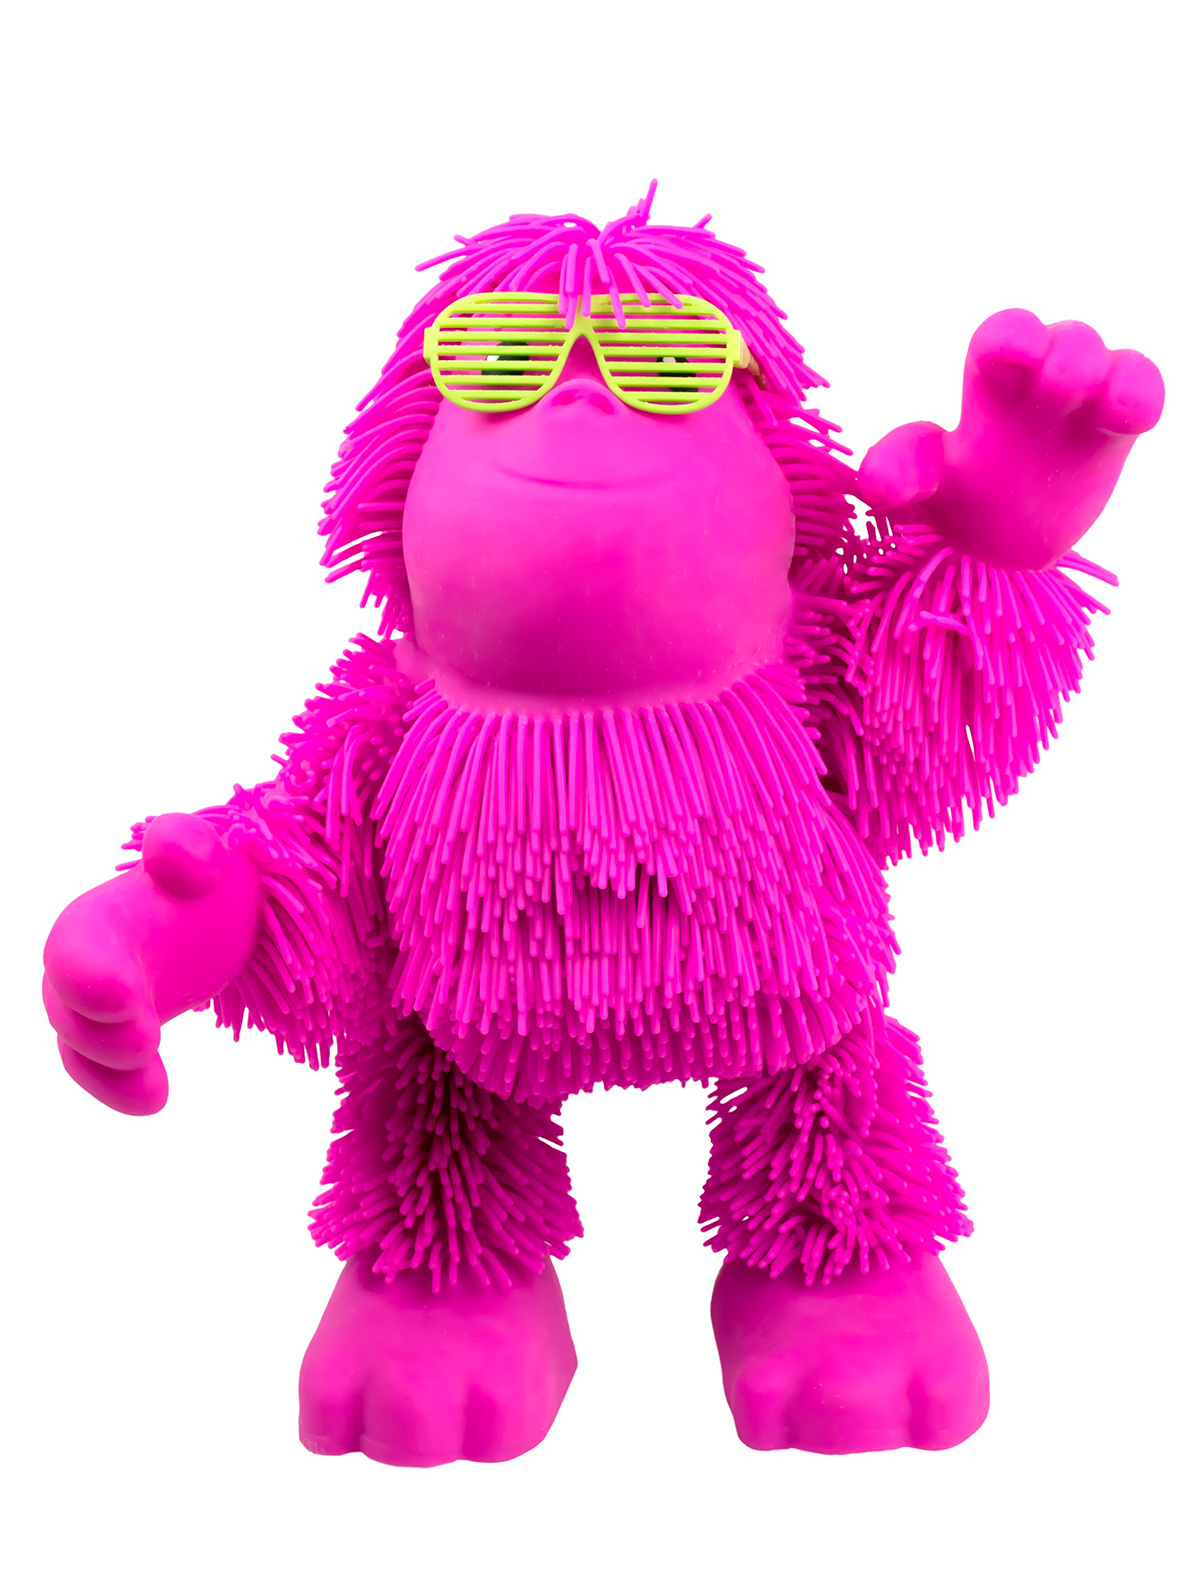 Игрушка интерактивная Jiggly Pets игрушка интерактивная jiggly pets орангутан тан тан розовый